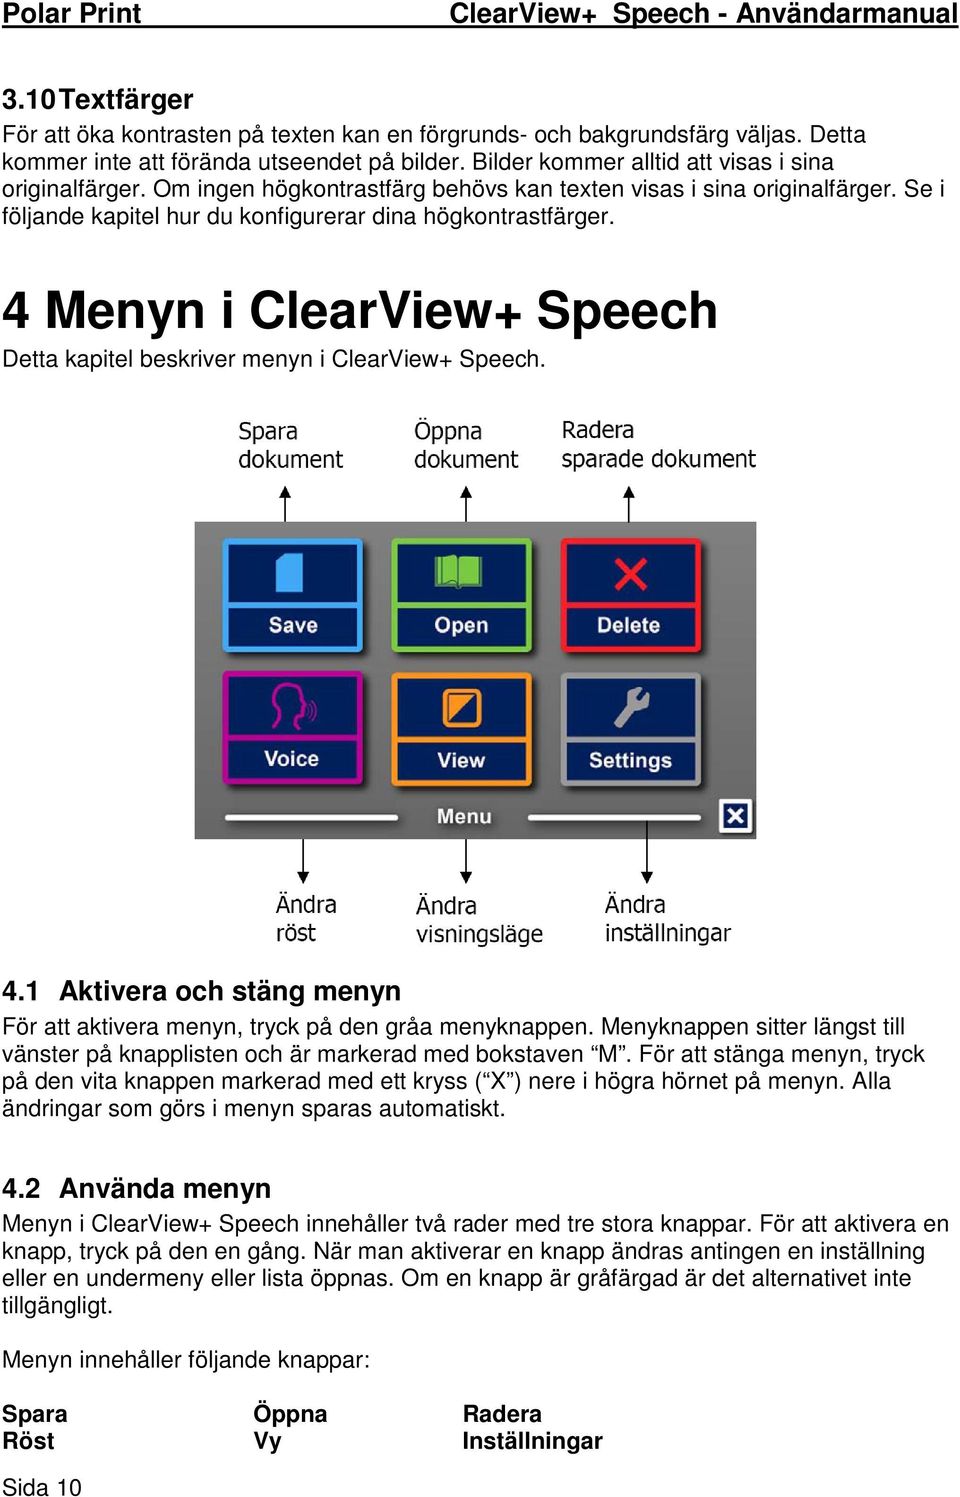 4 Menyn i ClearView+ Speech Detta kapitel beskriver menyn i ClearView+ Speech. 4.1 Aktivera och stäng menyn För att aktivera menyn, tryck på den gråa menyknappen.